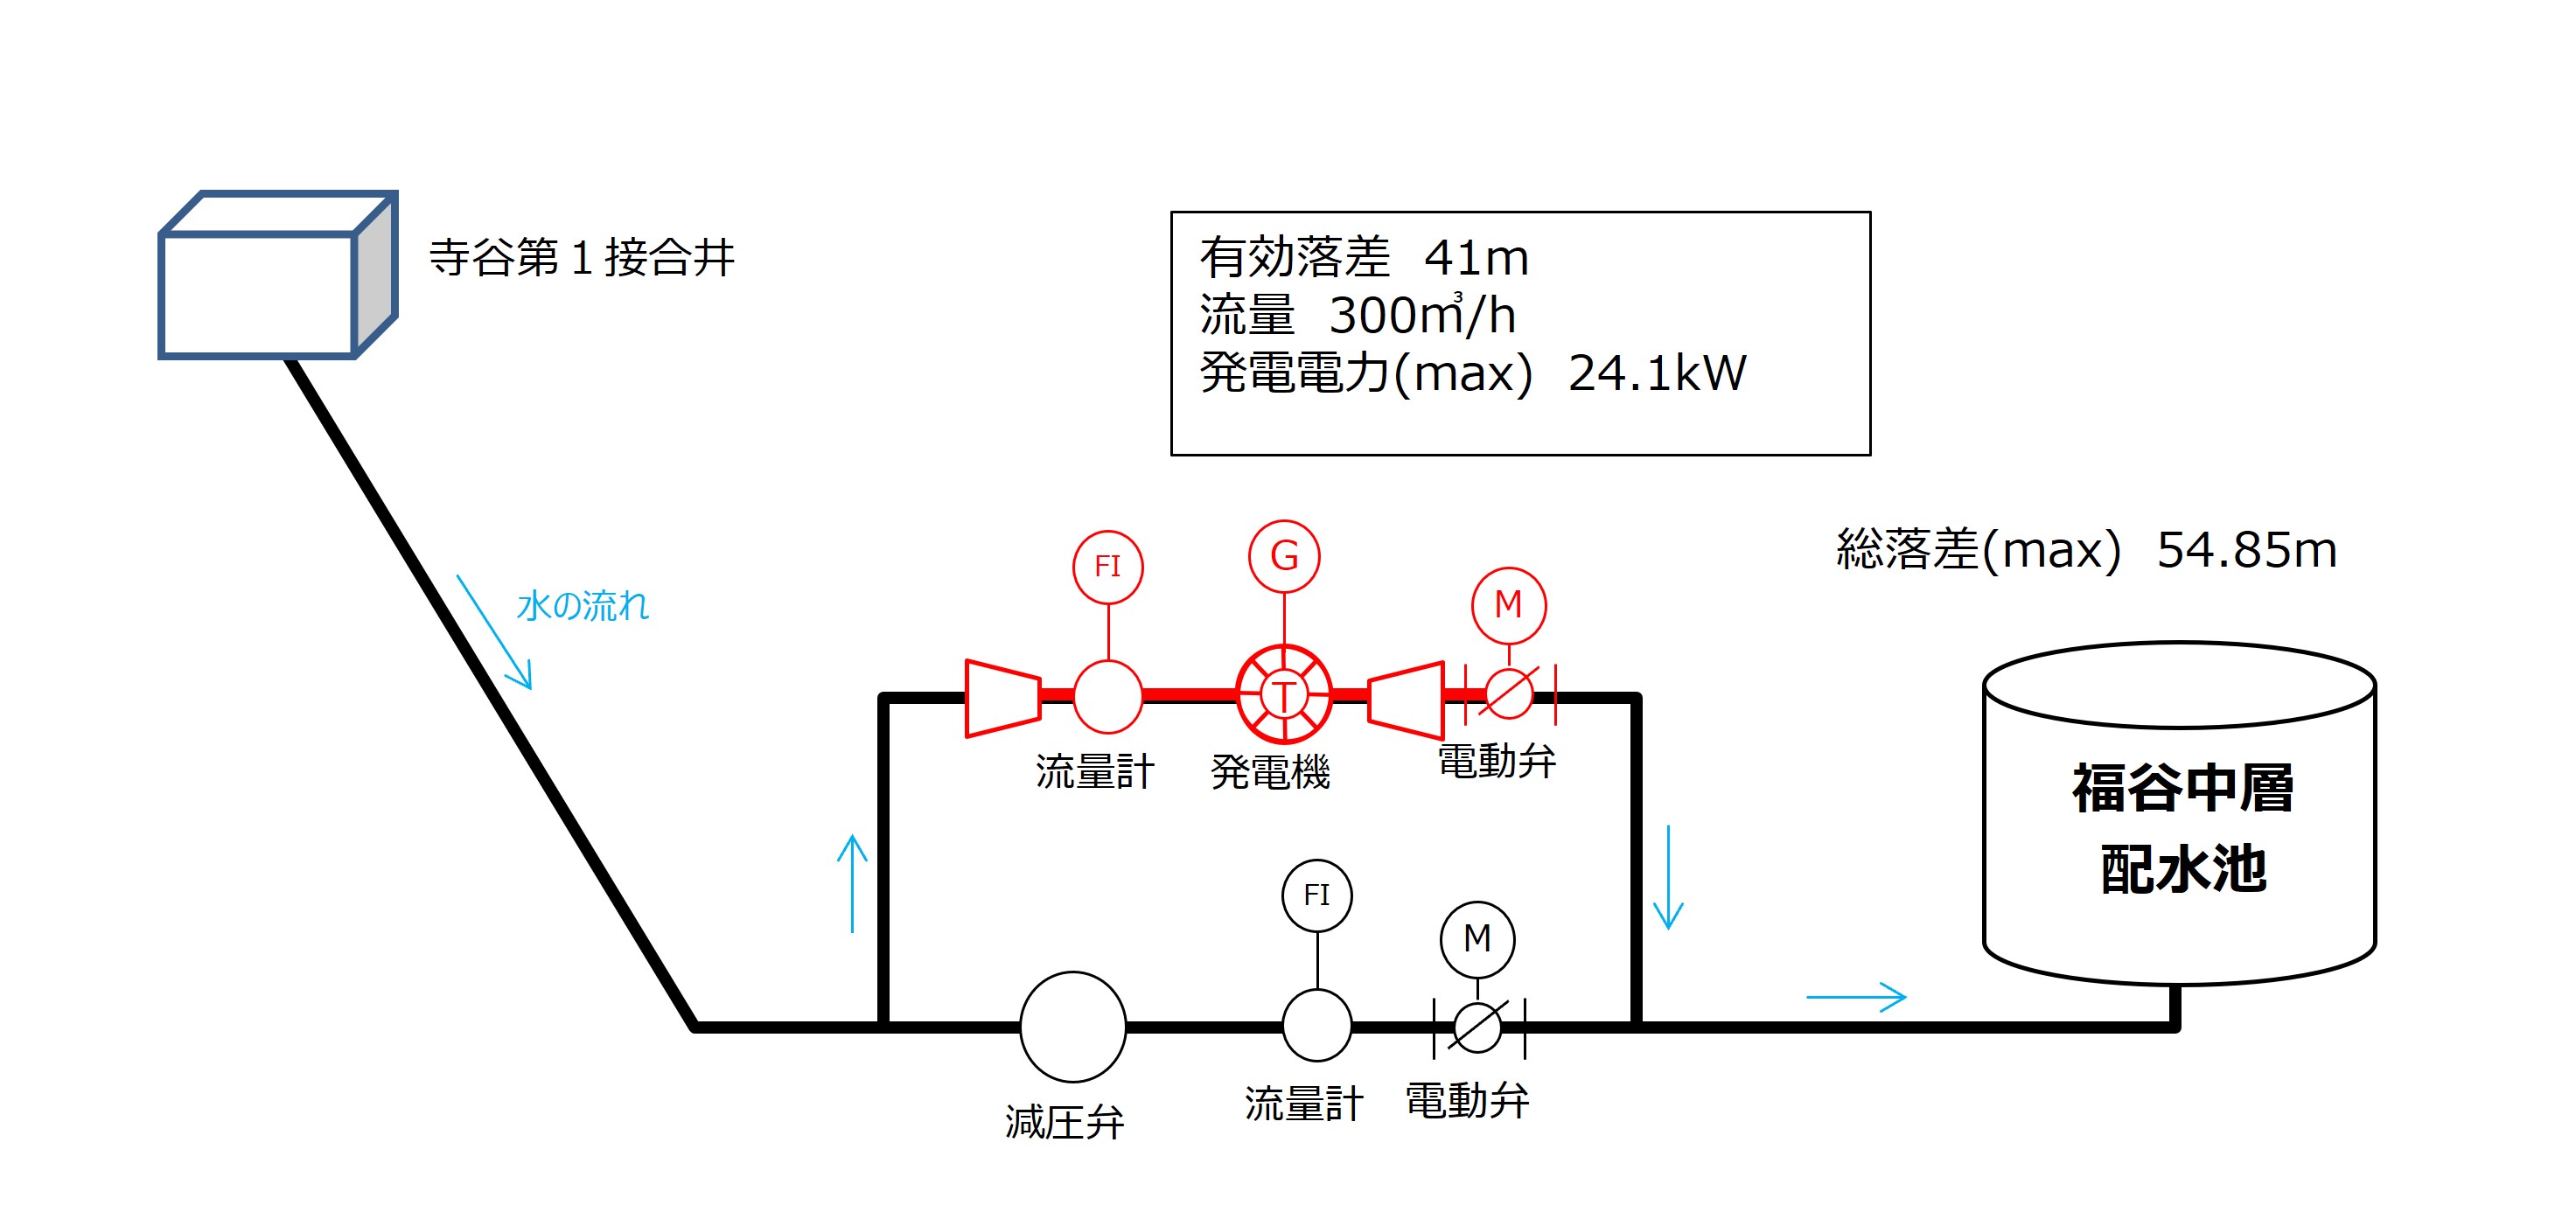 神戸市福谷中層配水池マイクロ水力発電所概要